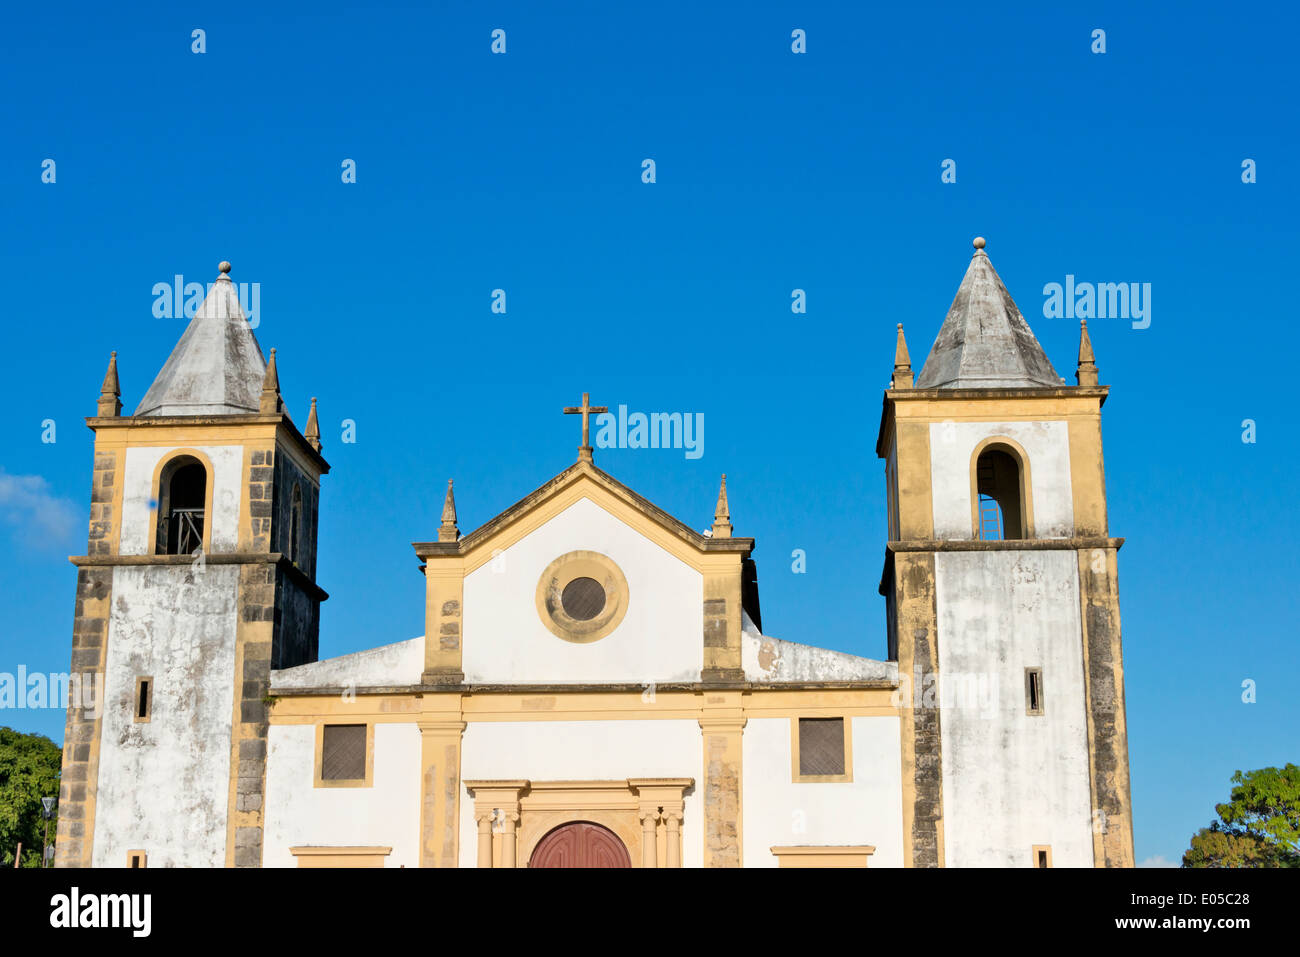 Igreja da Sé, Olinda (site du patrimoine mondial de l'UNESCO), l'État de Pernambuco, Brésil Banque D'Images